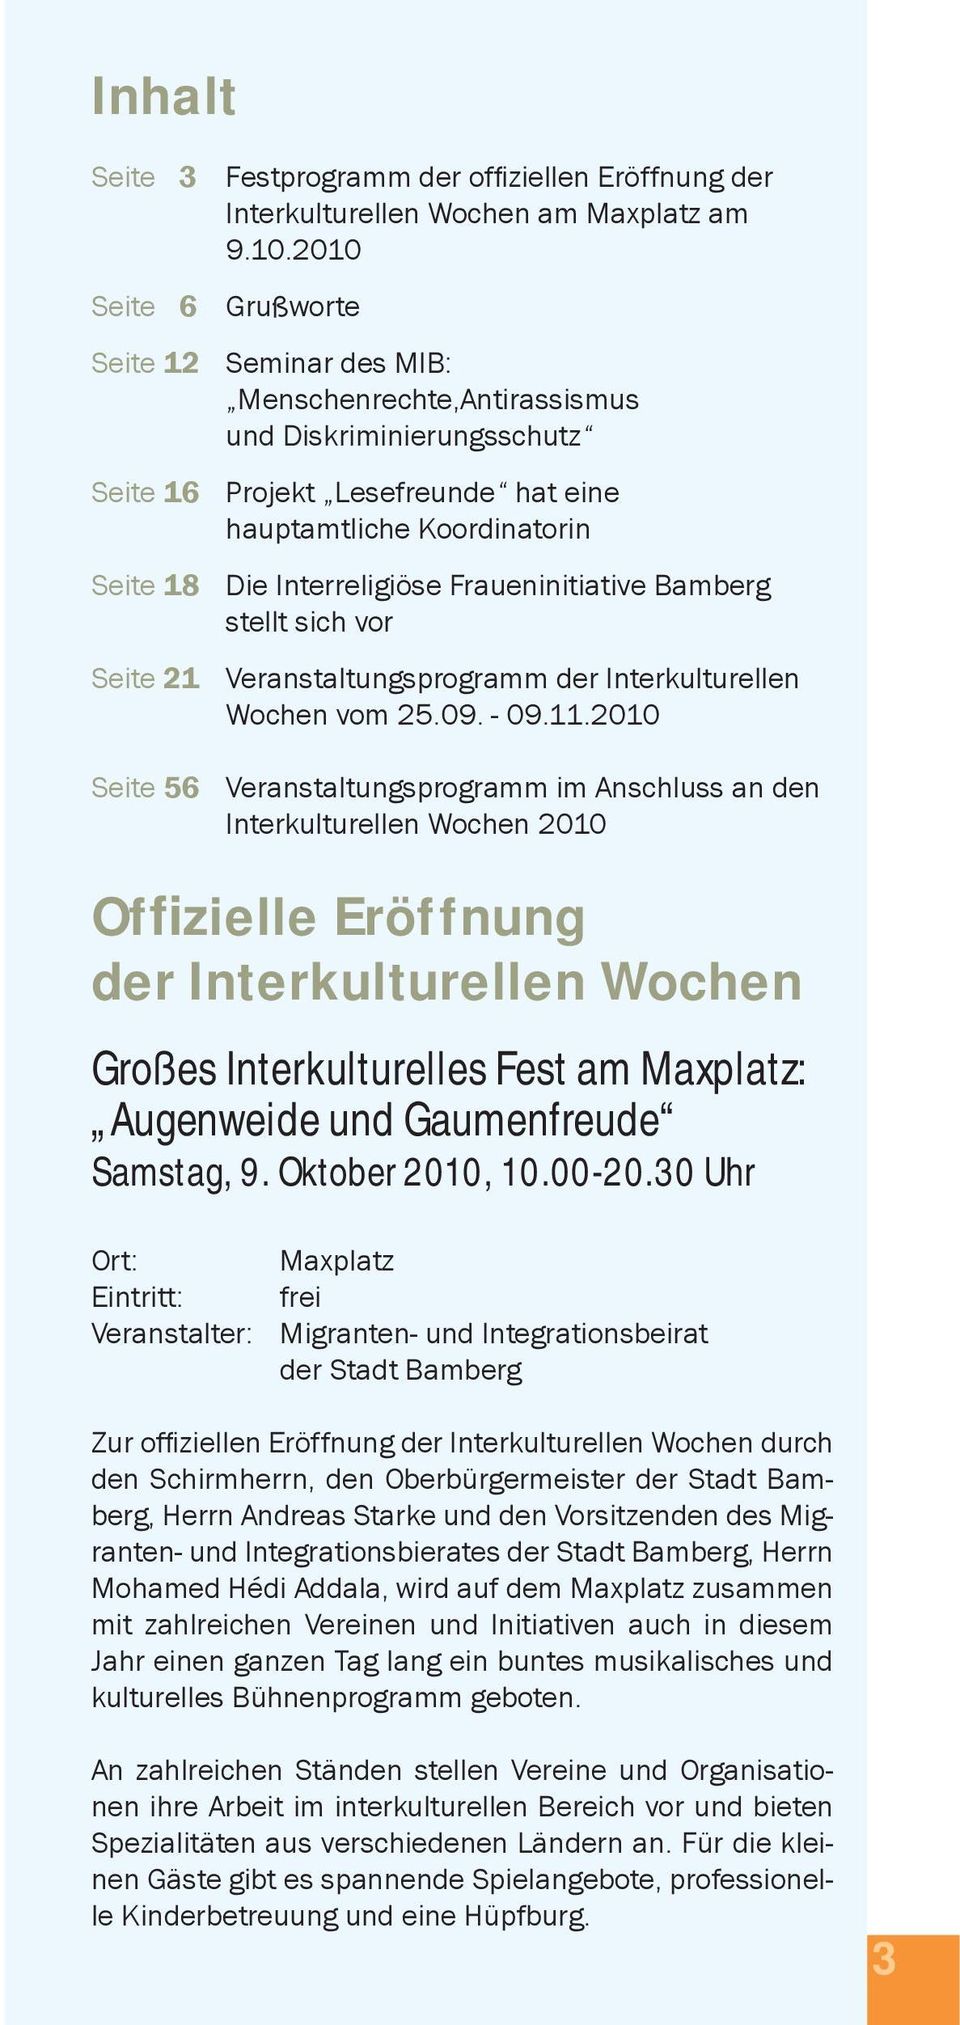 Fraueninitiative Bamberg stellt sich vor Seite 21 Veranstaltungsprogramm der Interkulturellen Wochen vom 25.09. - 09.11.